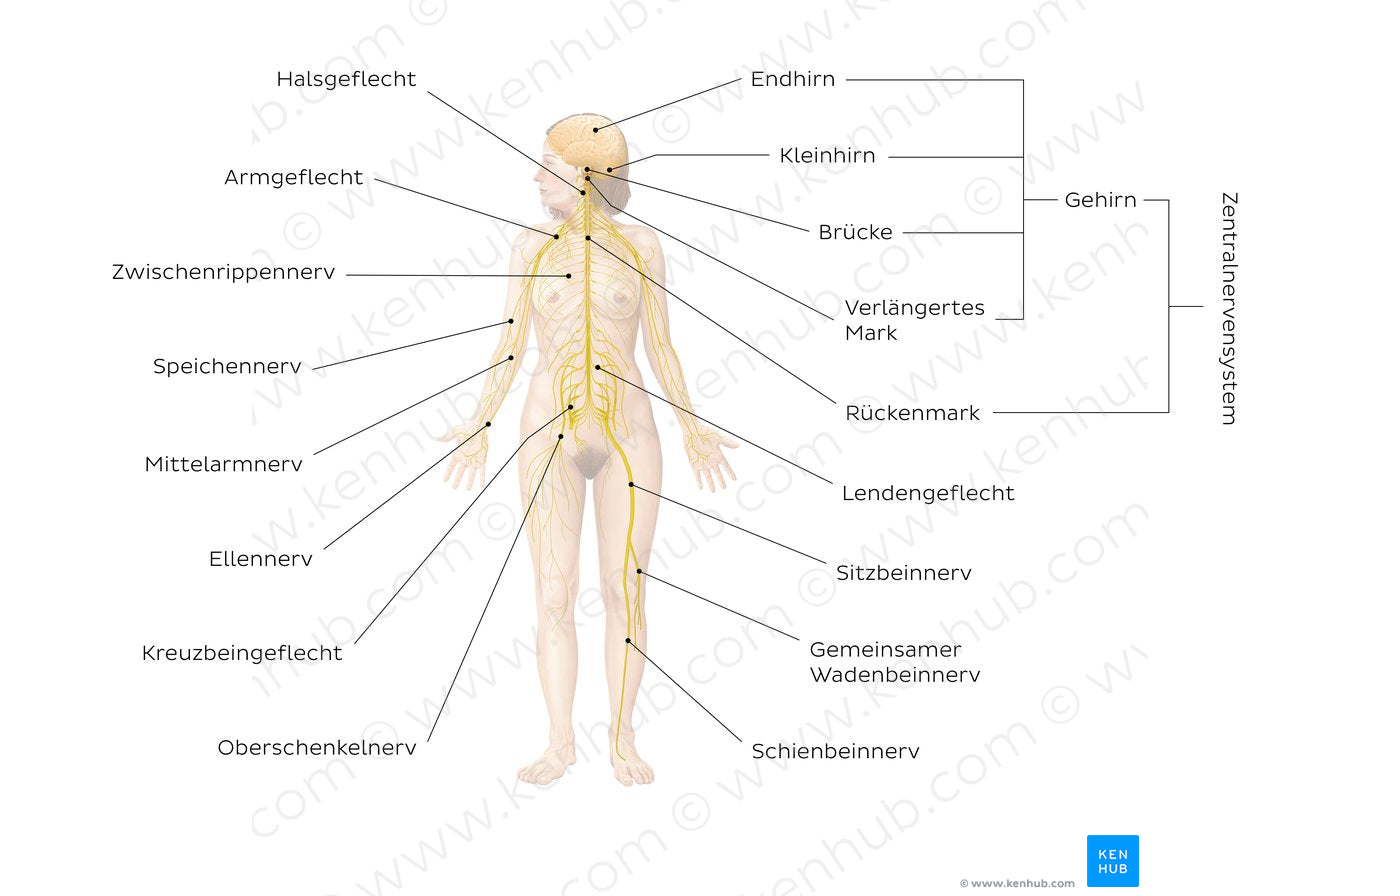 Nervous system (German)